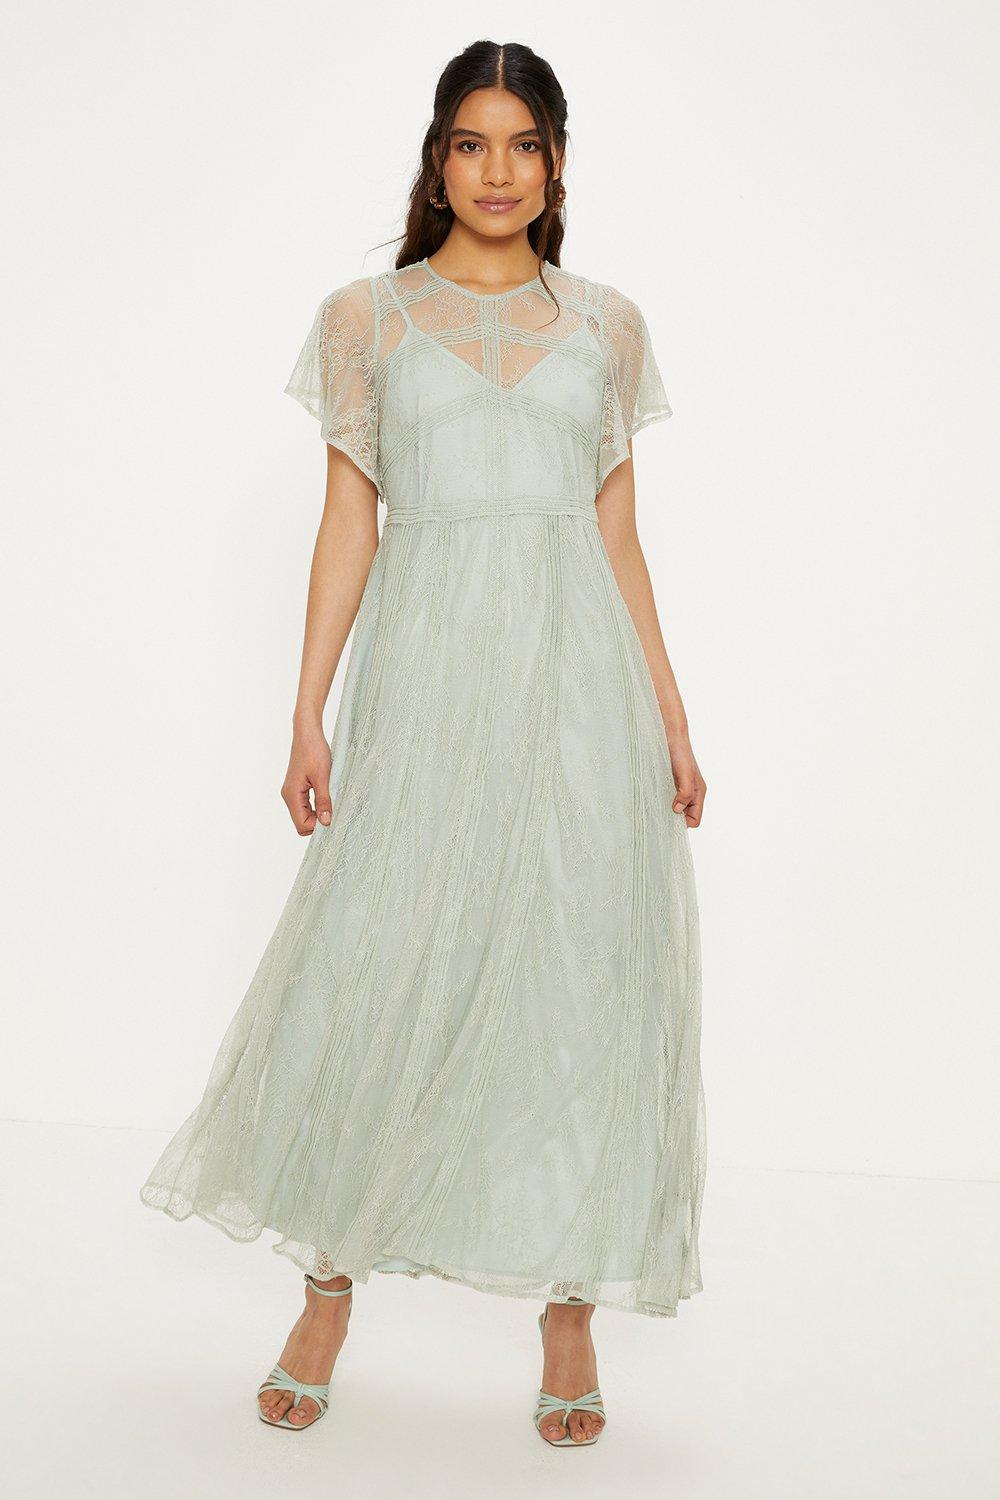 Нежное кружевное платье макси премиум-класса Oasis, зеленый длинное зеленое шифоновое платье подружки невесты элегантное свадебное платье для гостей кружевное платье без рукавов с аппликацией 2020